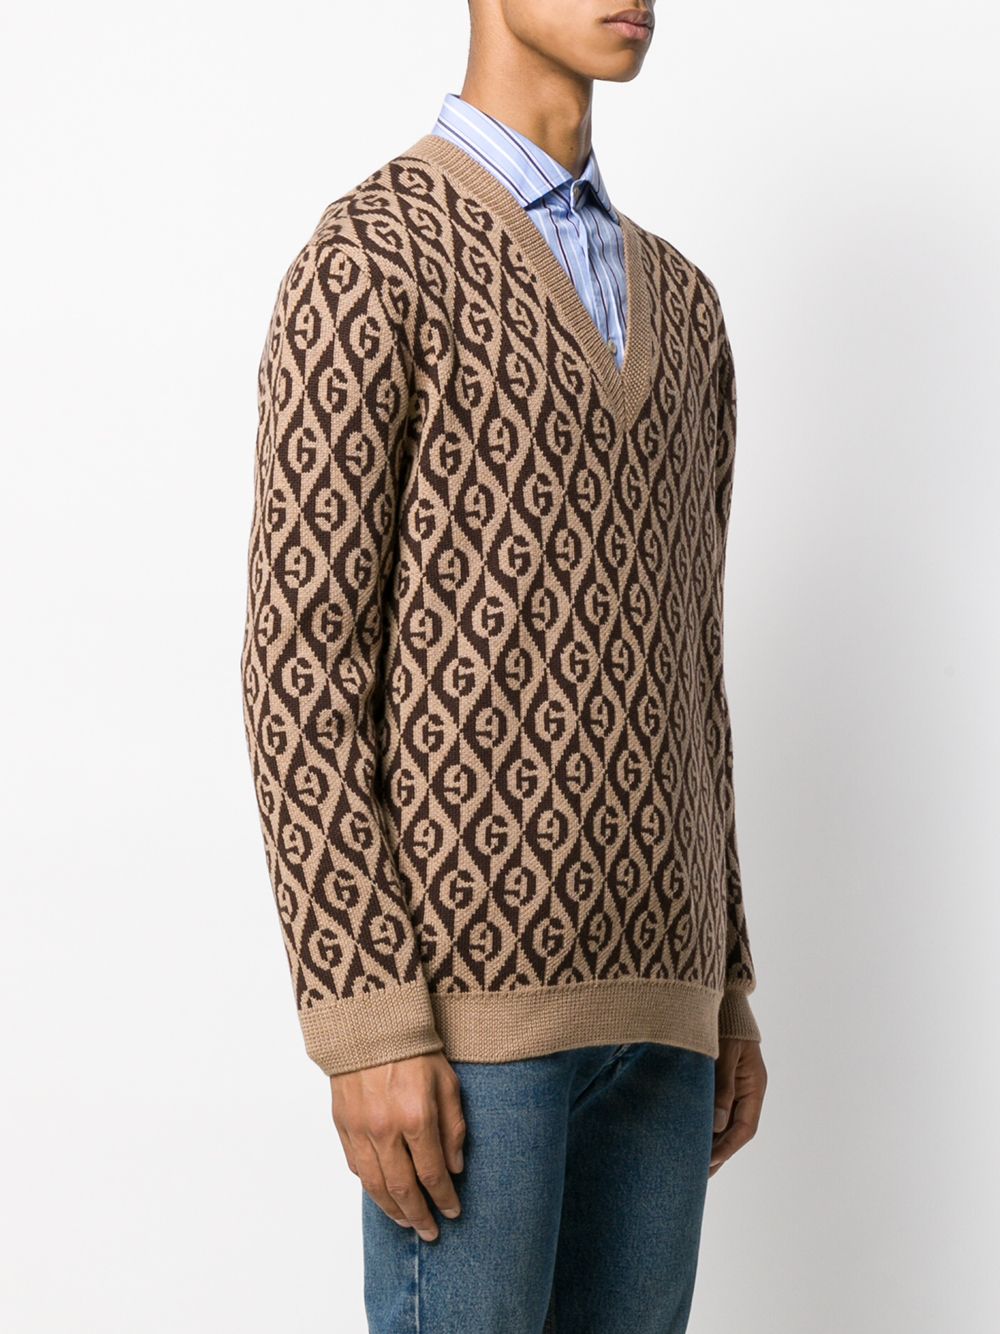 фото Gucci свитер с v-образным вырезом и узором